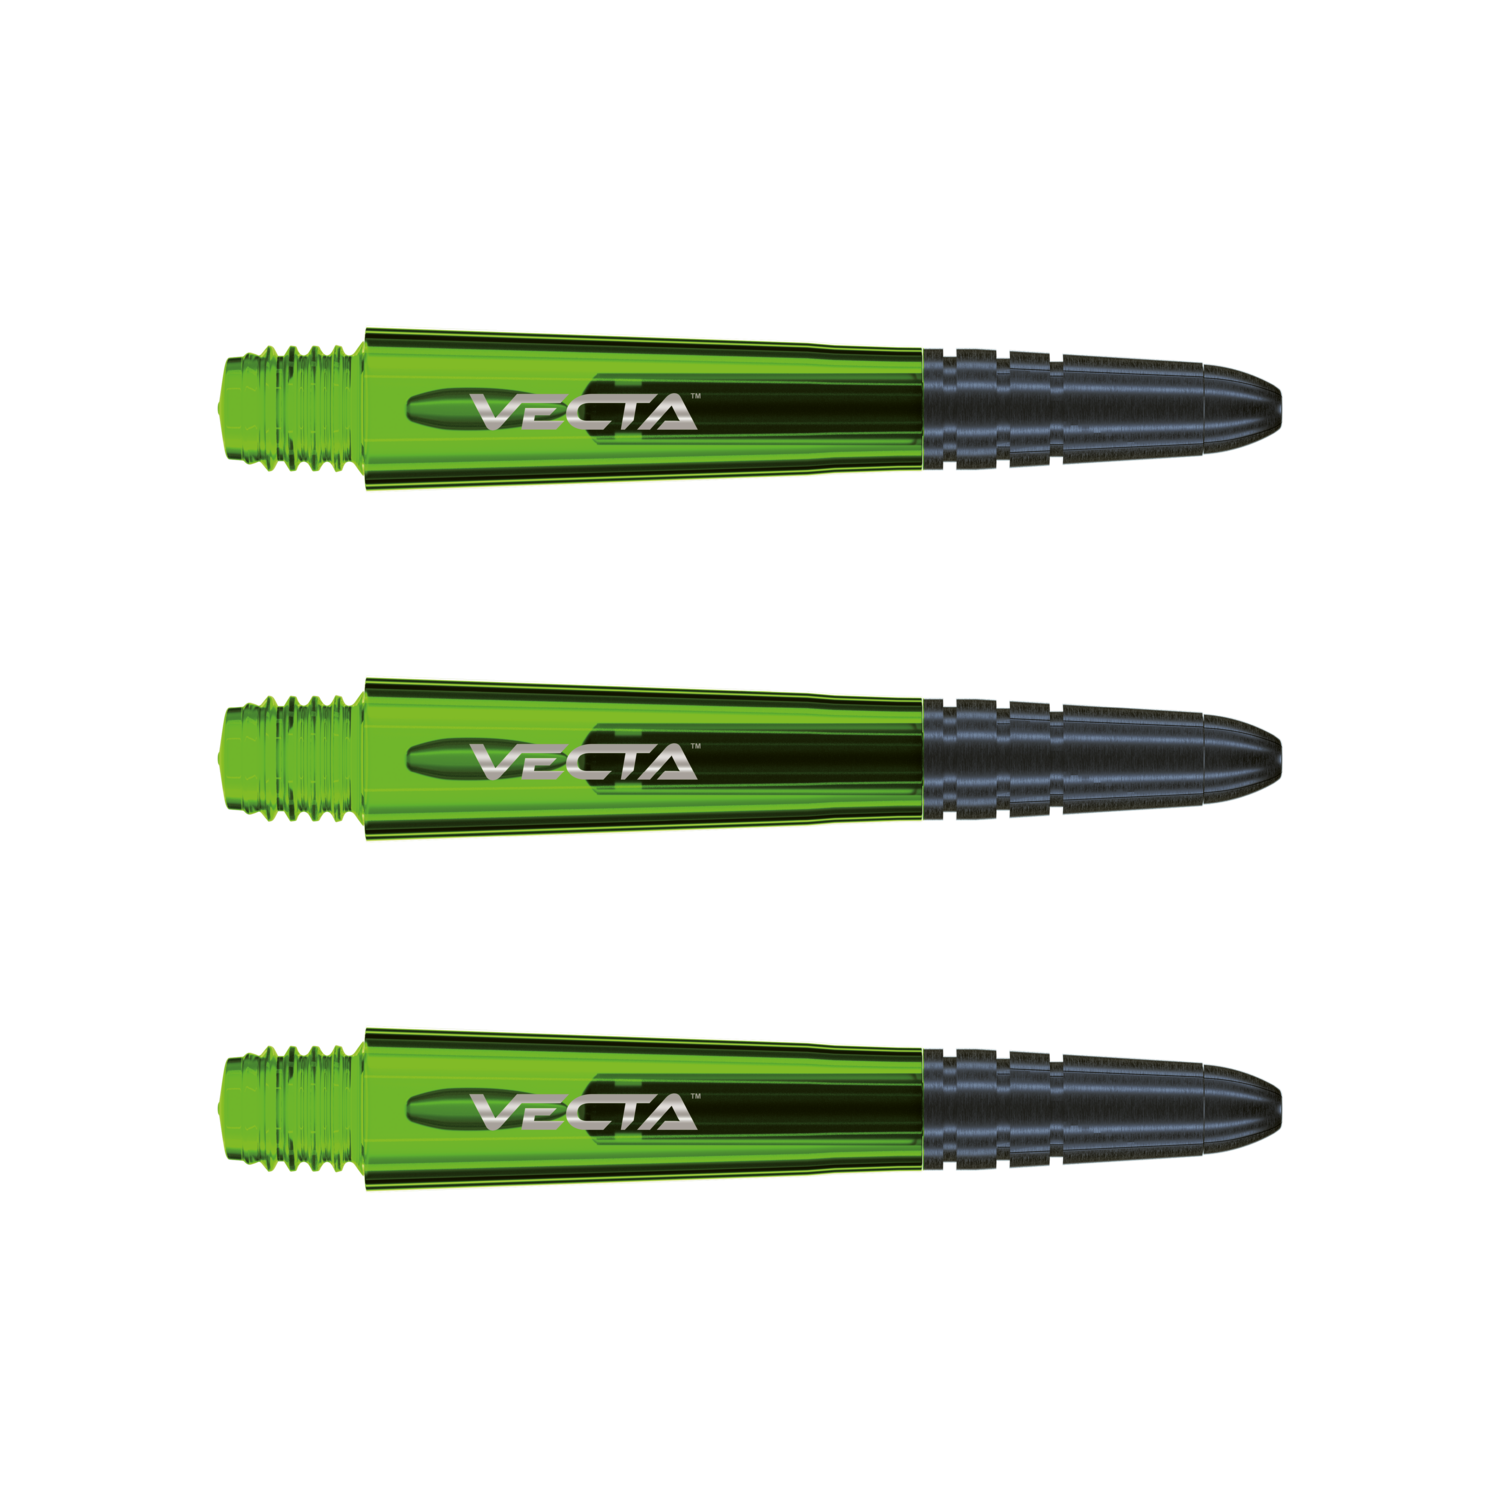 Vecta medium green shafts